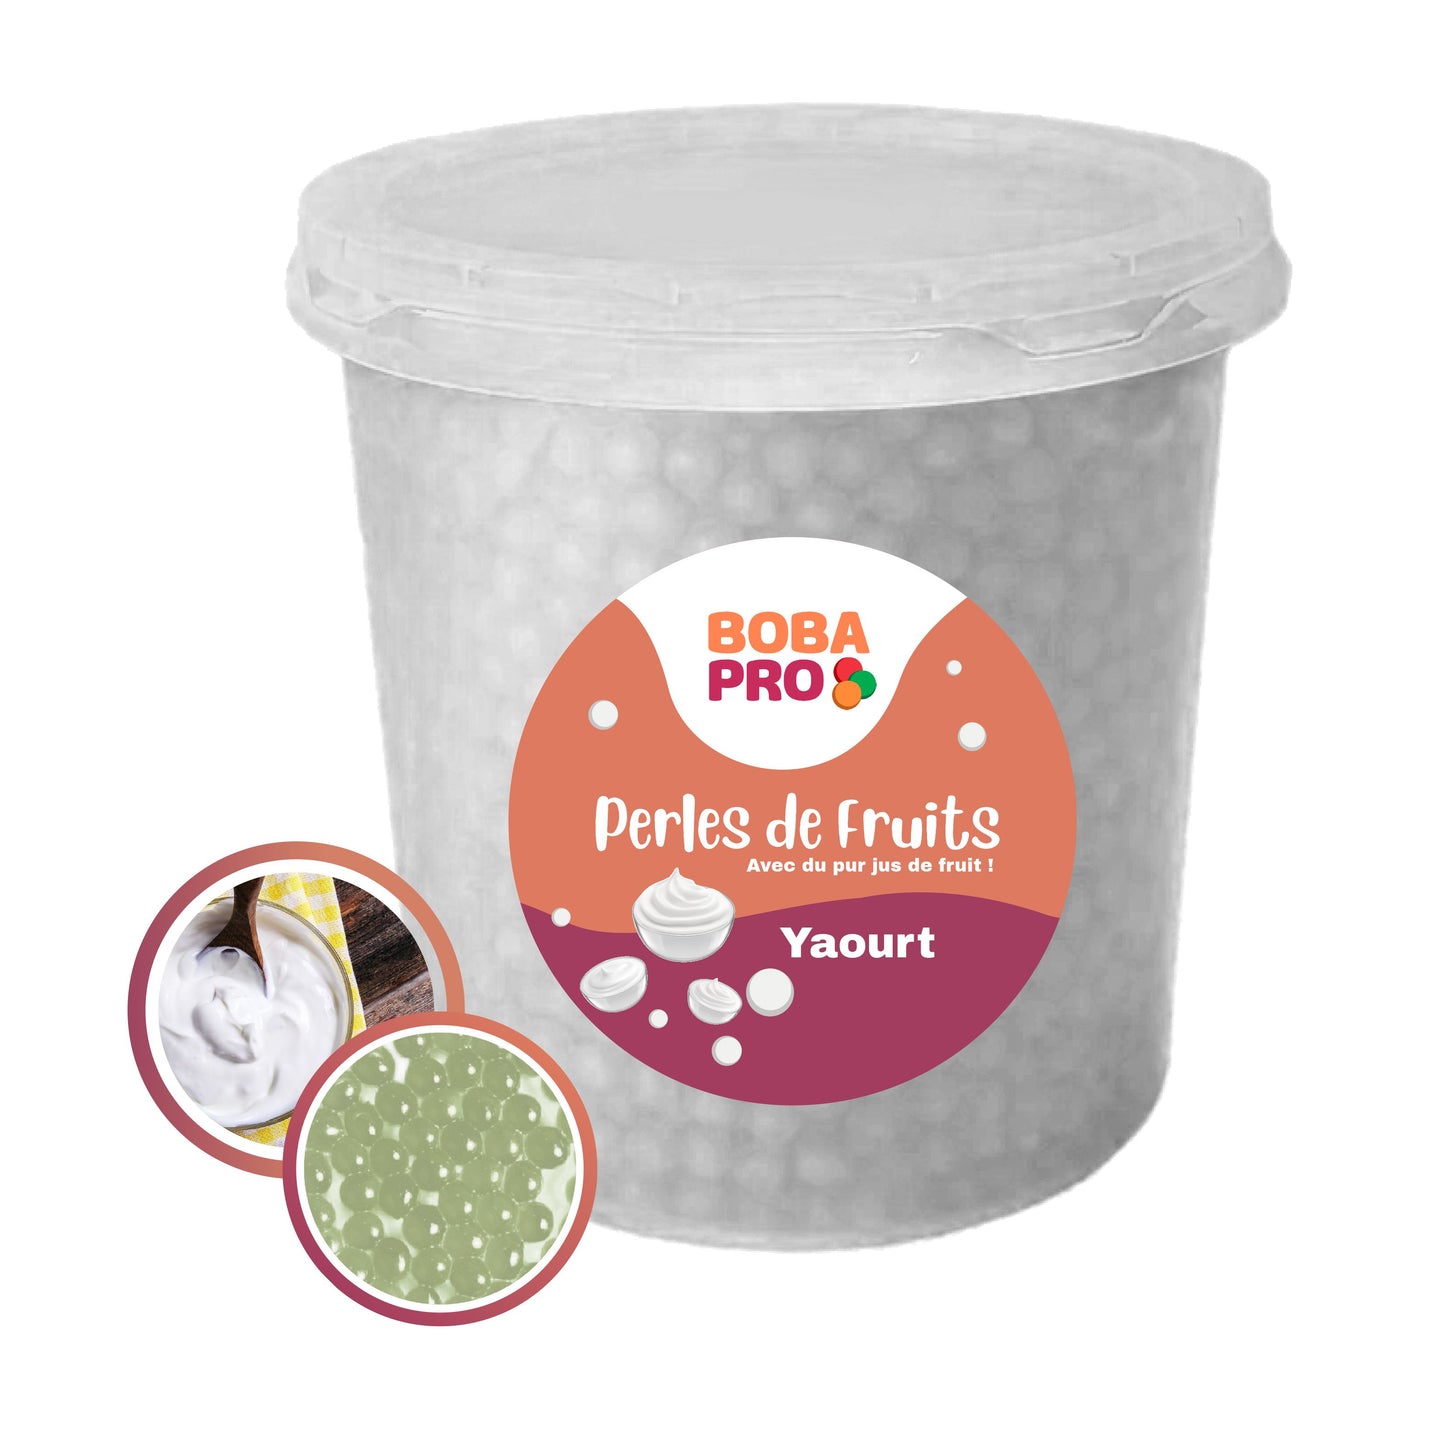 Perles de Yogurt - Popping Boba Yogurt - Perles de fruits